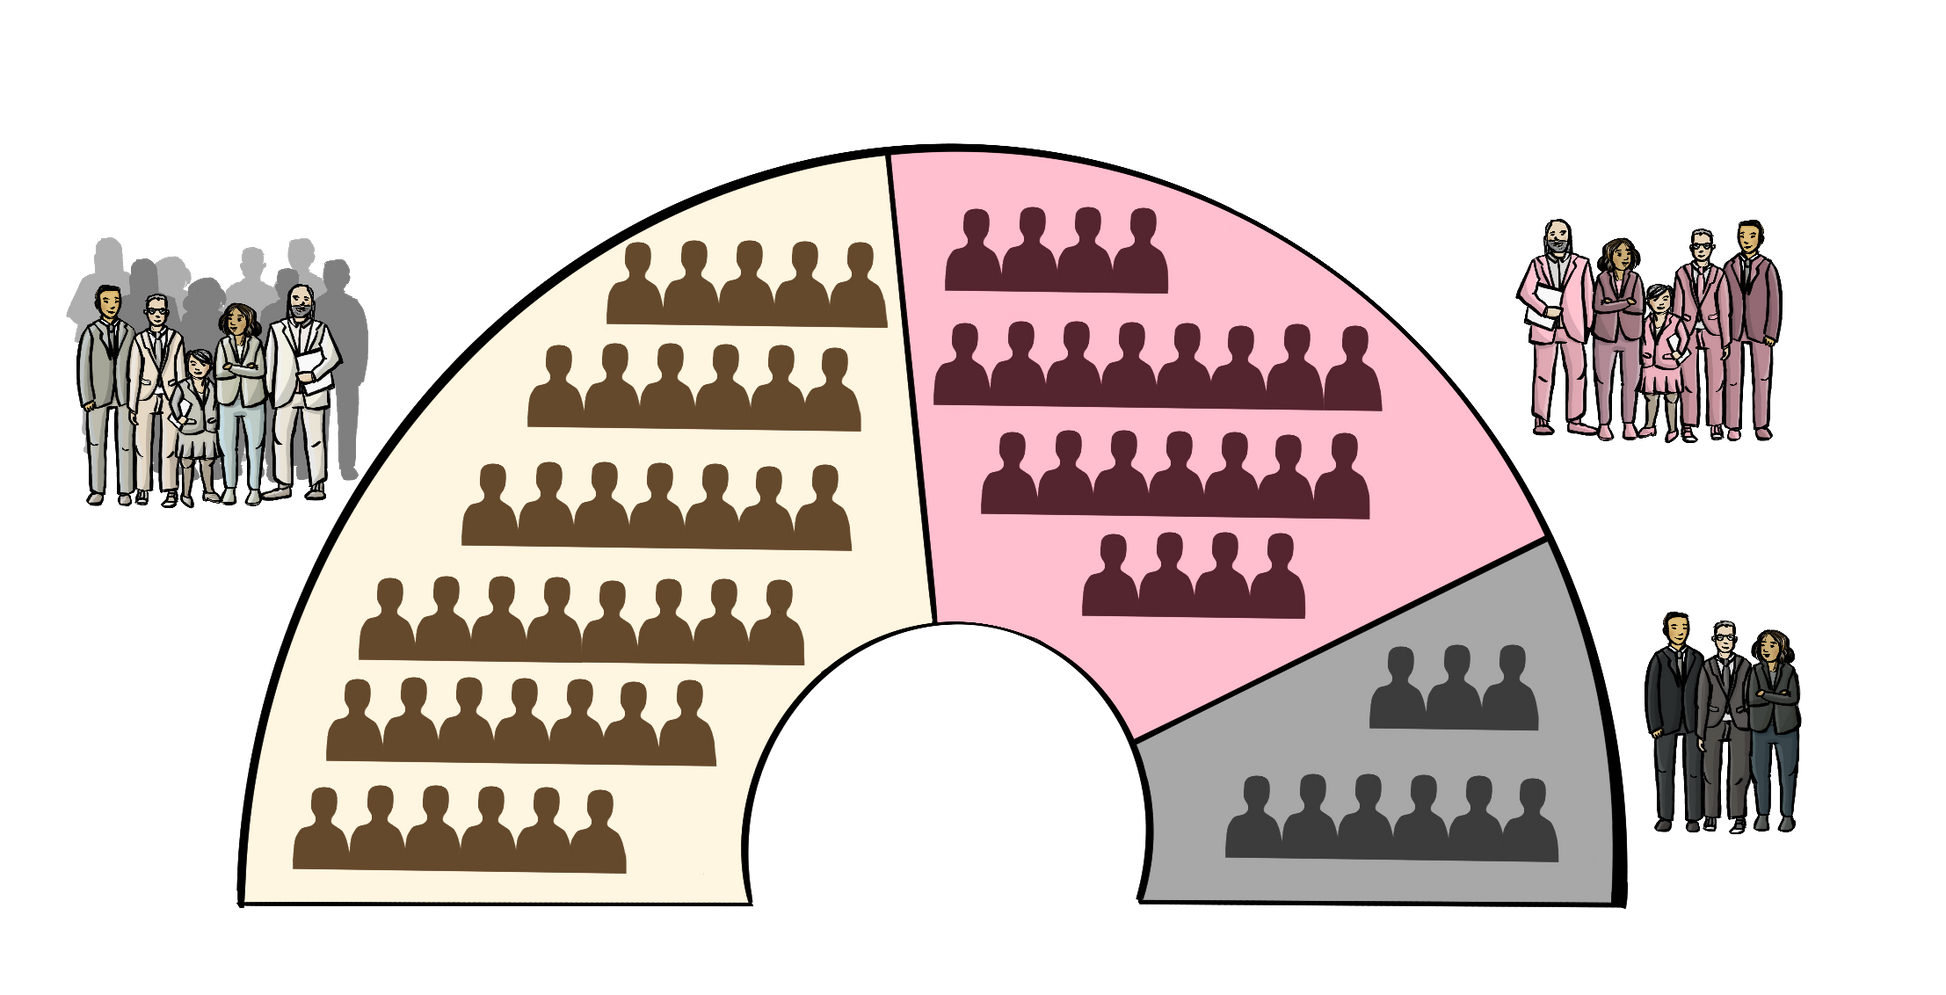 Eine Bogenförmige Grafik mit einem großen, einem mittleren und einem kleinen Abschnitt. In jedem Abschnitt sind Umrisse von Menschen zu sehen. Neben jedem Abschnitt steht eine Gruppe Menschen in förmlicher Kleidung. Die Gruppengröße passt zur Größe des Abschnitts. 